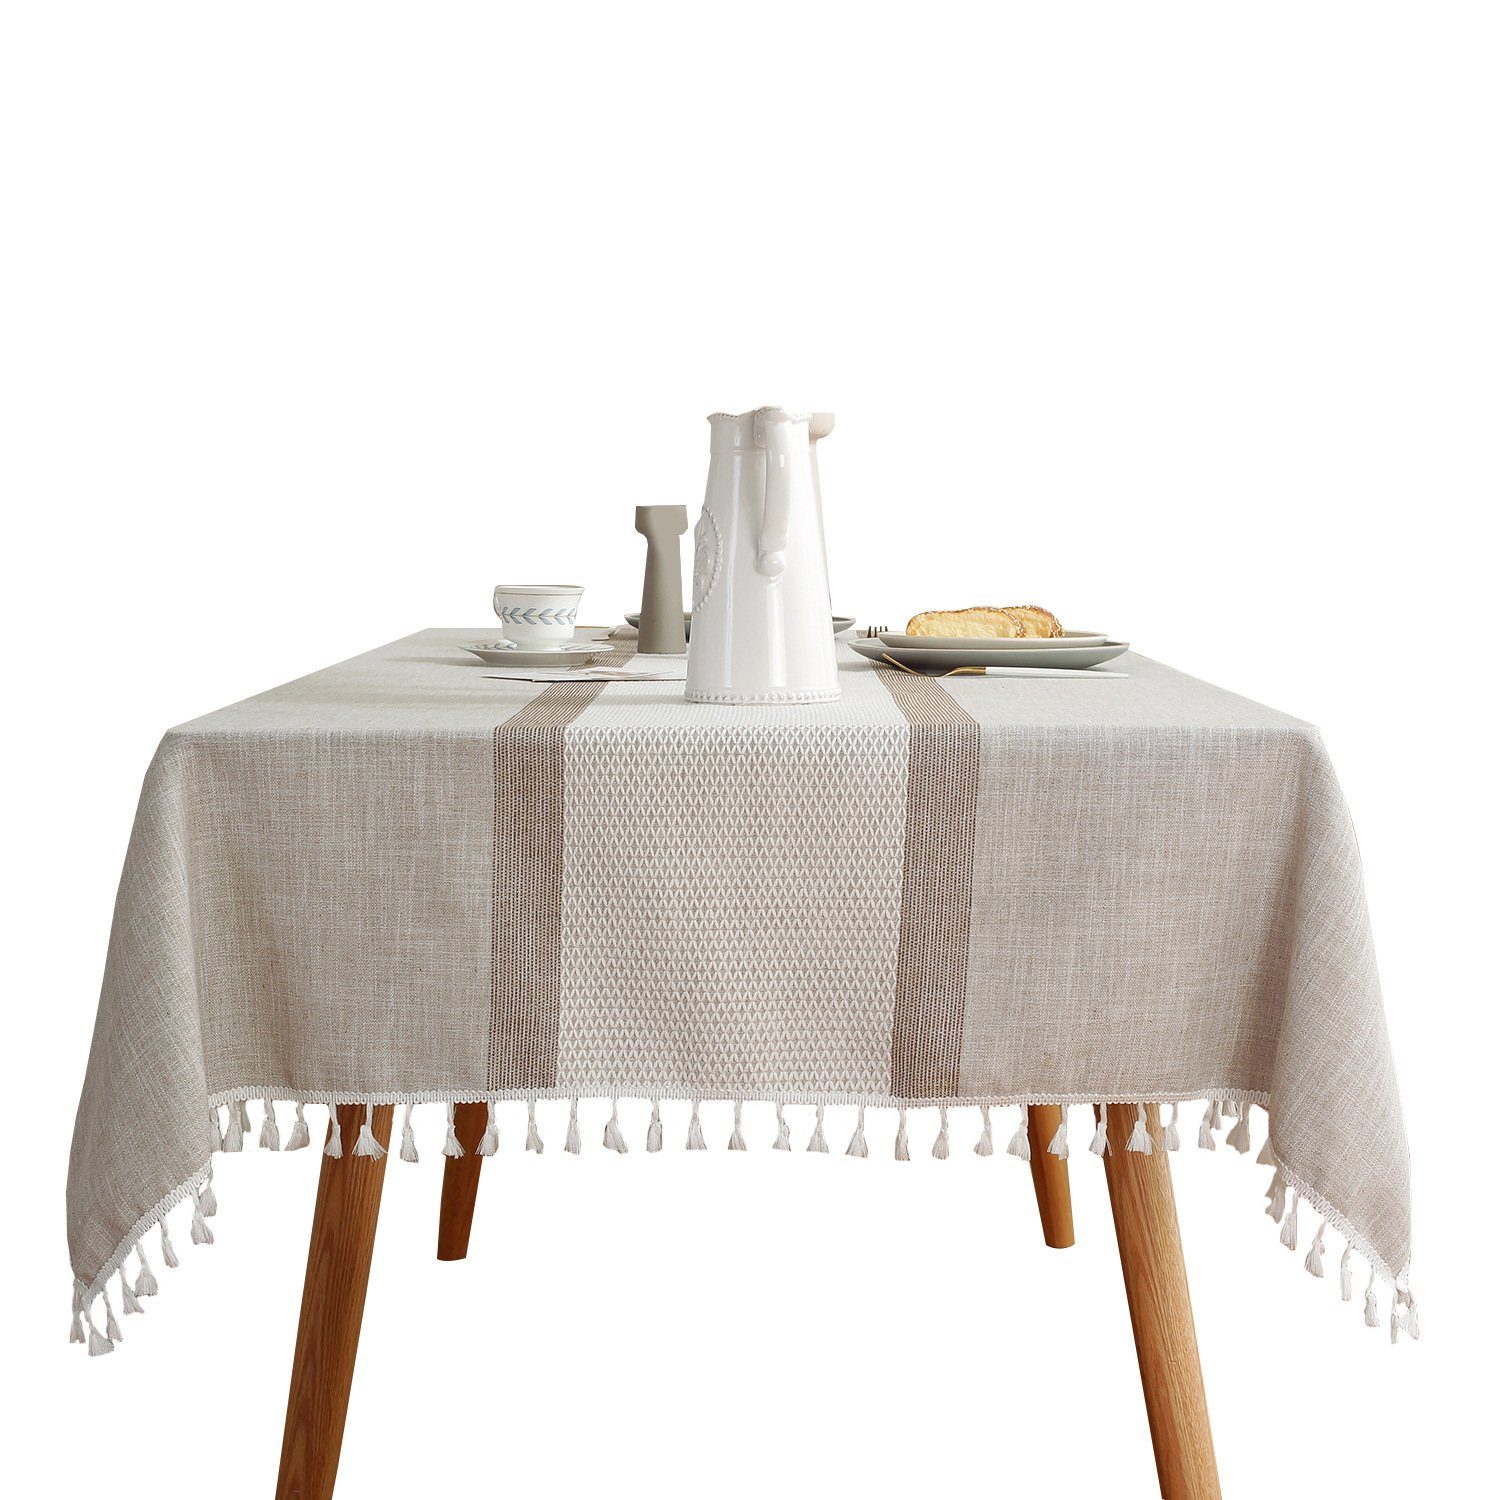 FELIXLEO Tischdecke Tischdecken Bauernhaus gestreifte graue für Küche Esstisch 140*180cm